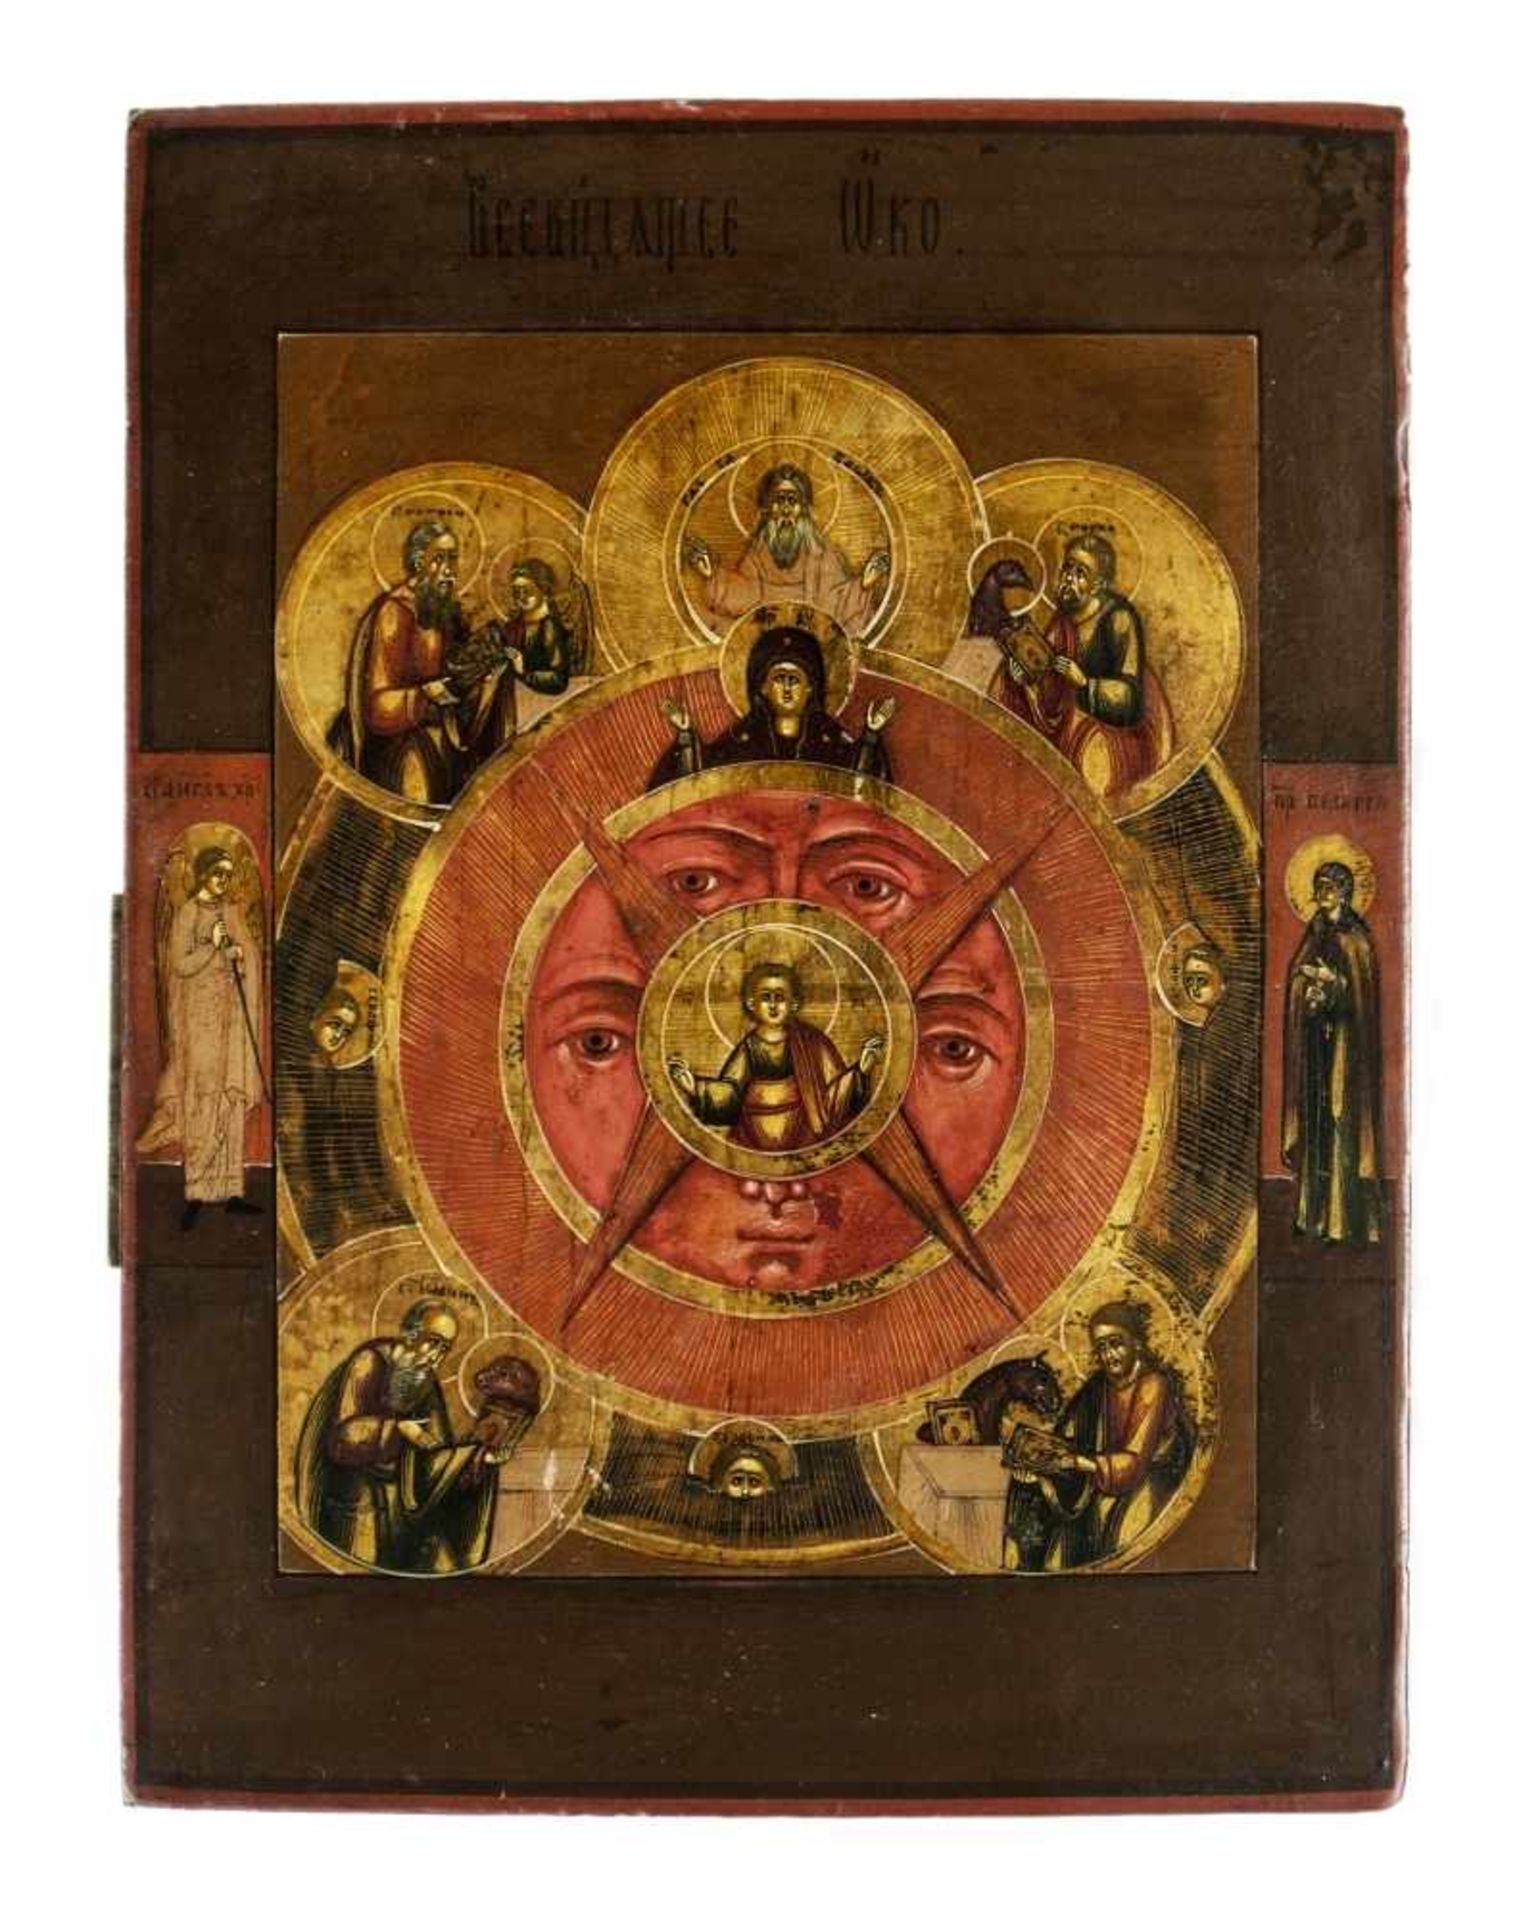 Das Alles sehende Auge GottesRussische Ikone, Tempera / Holz, 19. Jh.22,1 x 16,6 cmProvenienz: